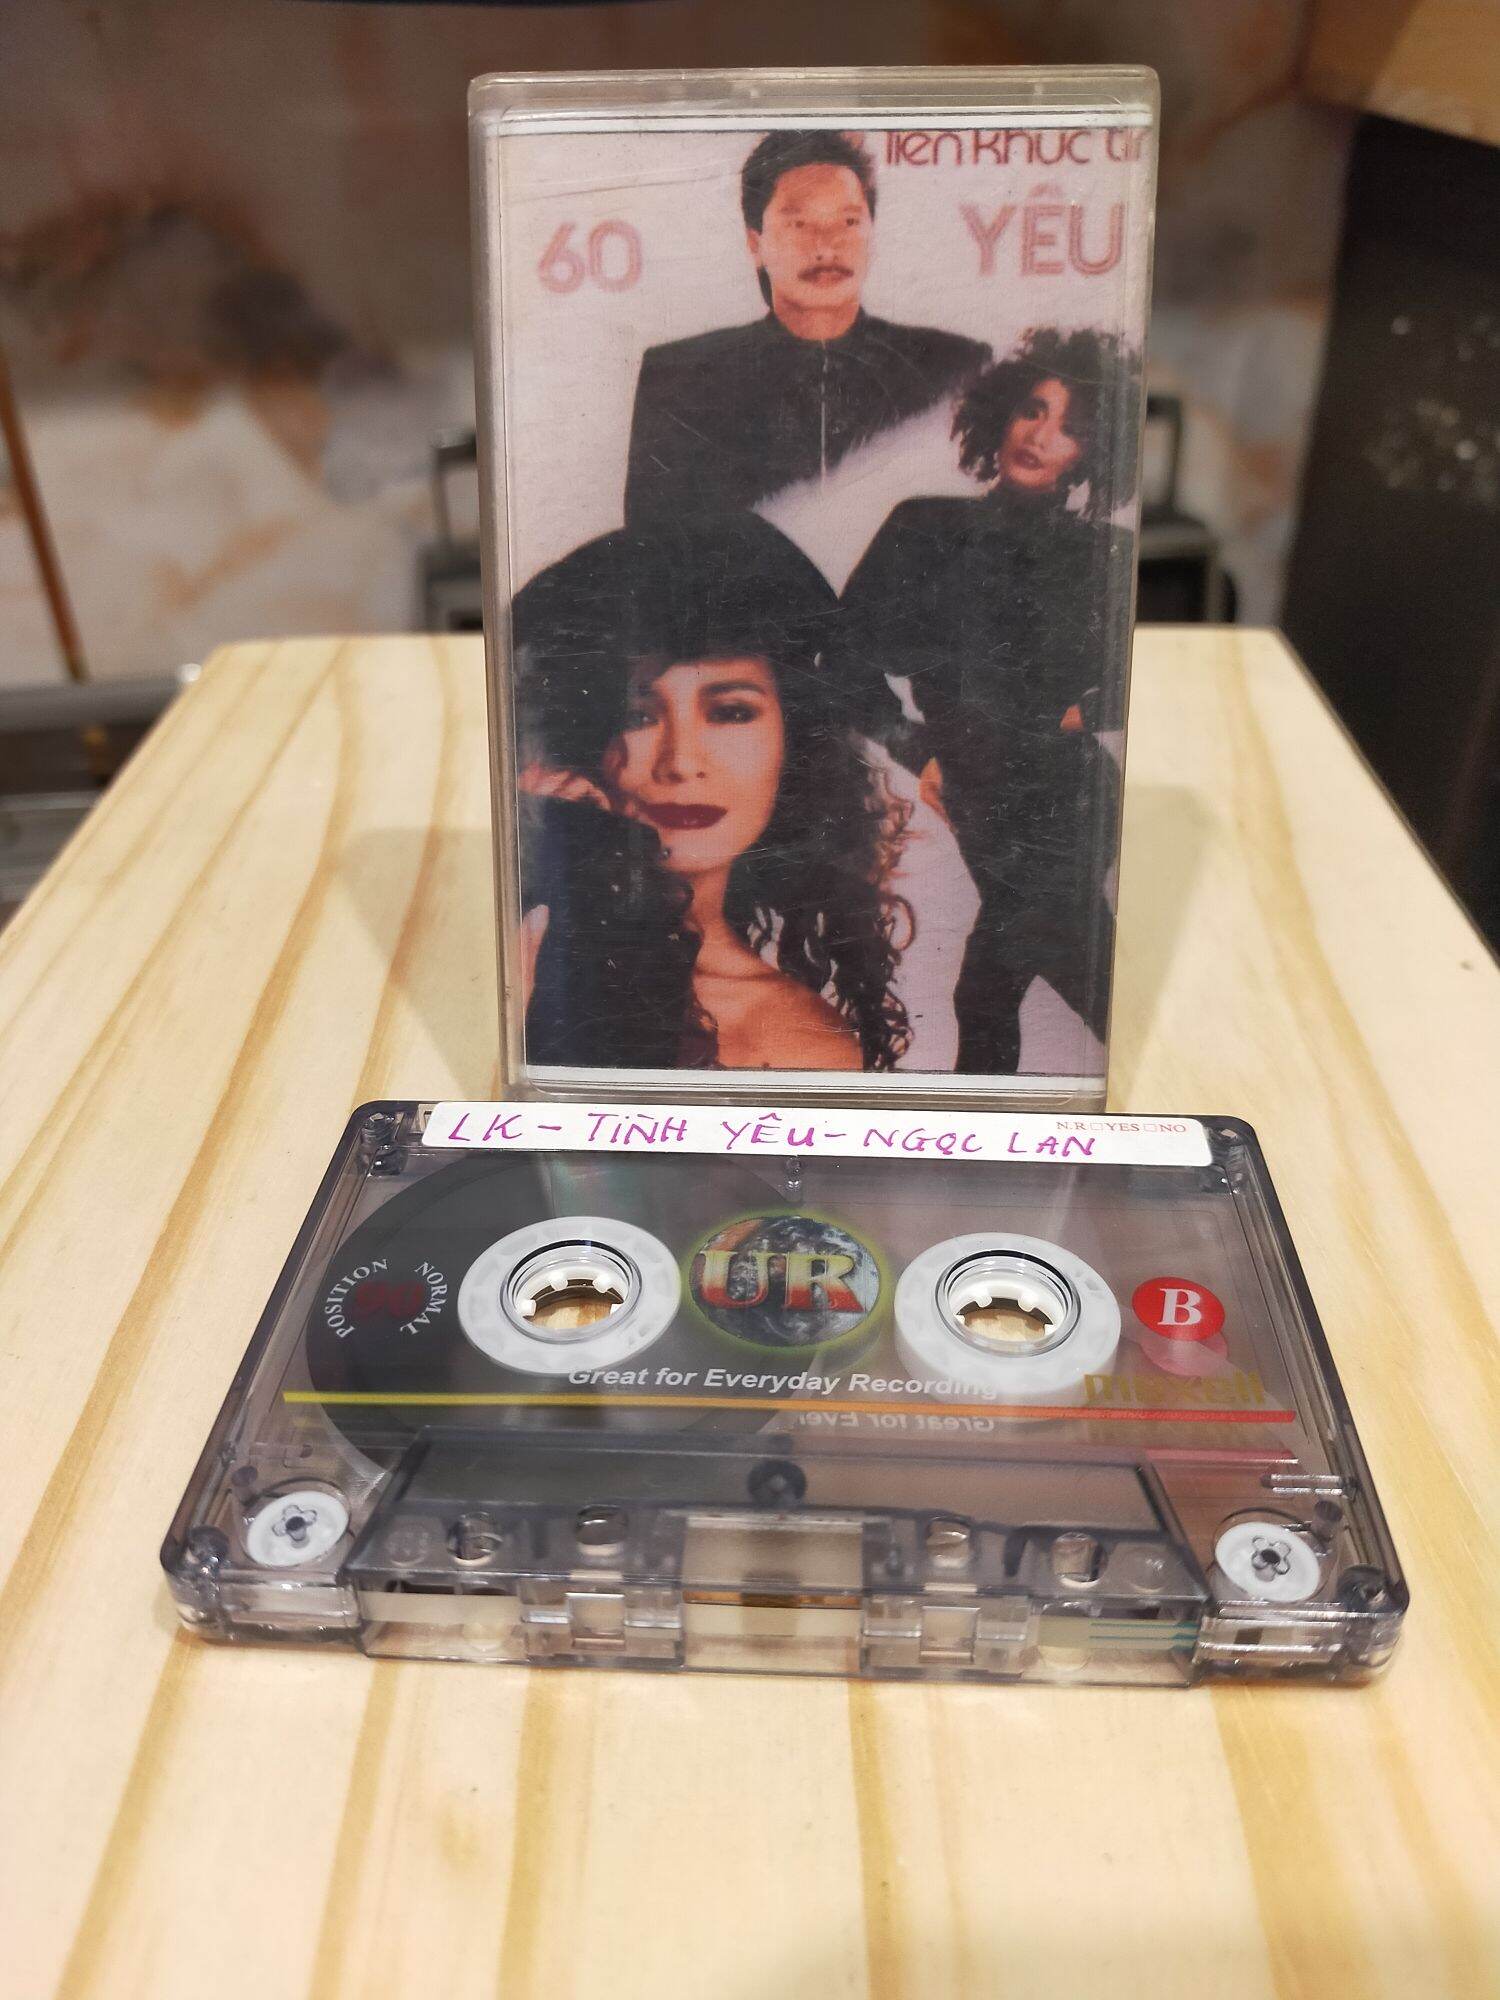 1 băng cassette Maxell ur 90s liên khúc tình yêu( lưu ý: đây là băng cũ